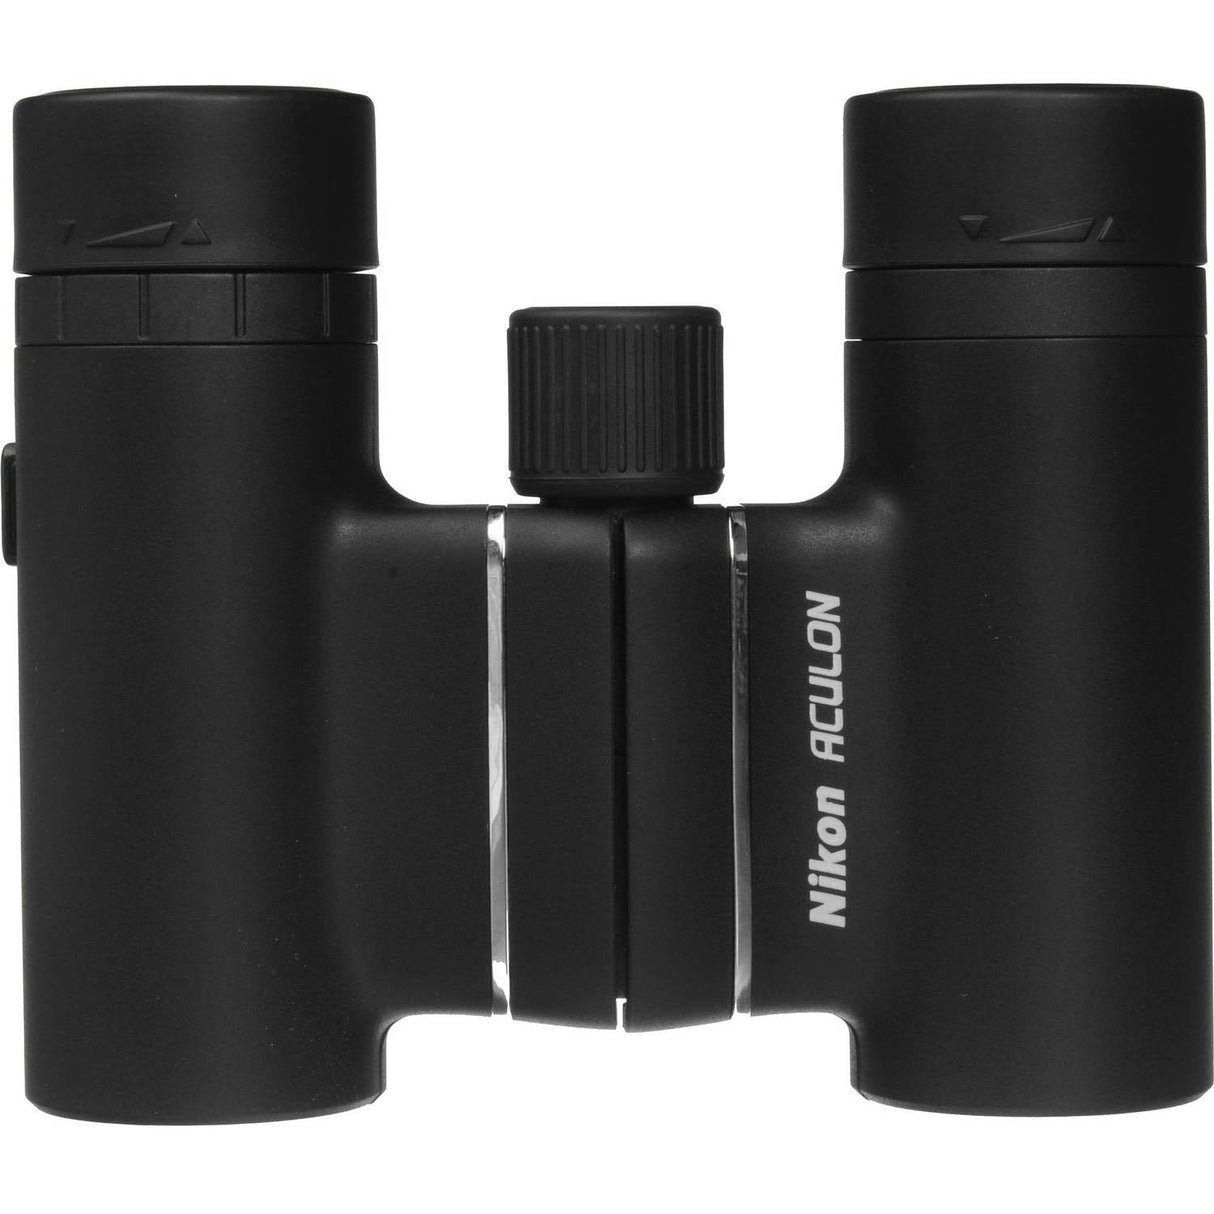 Nikon 10x21 Aculon T01 Binocular (Black)